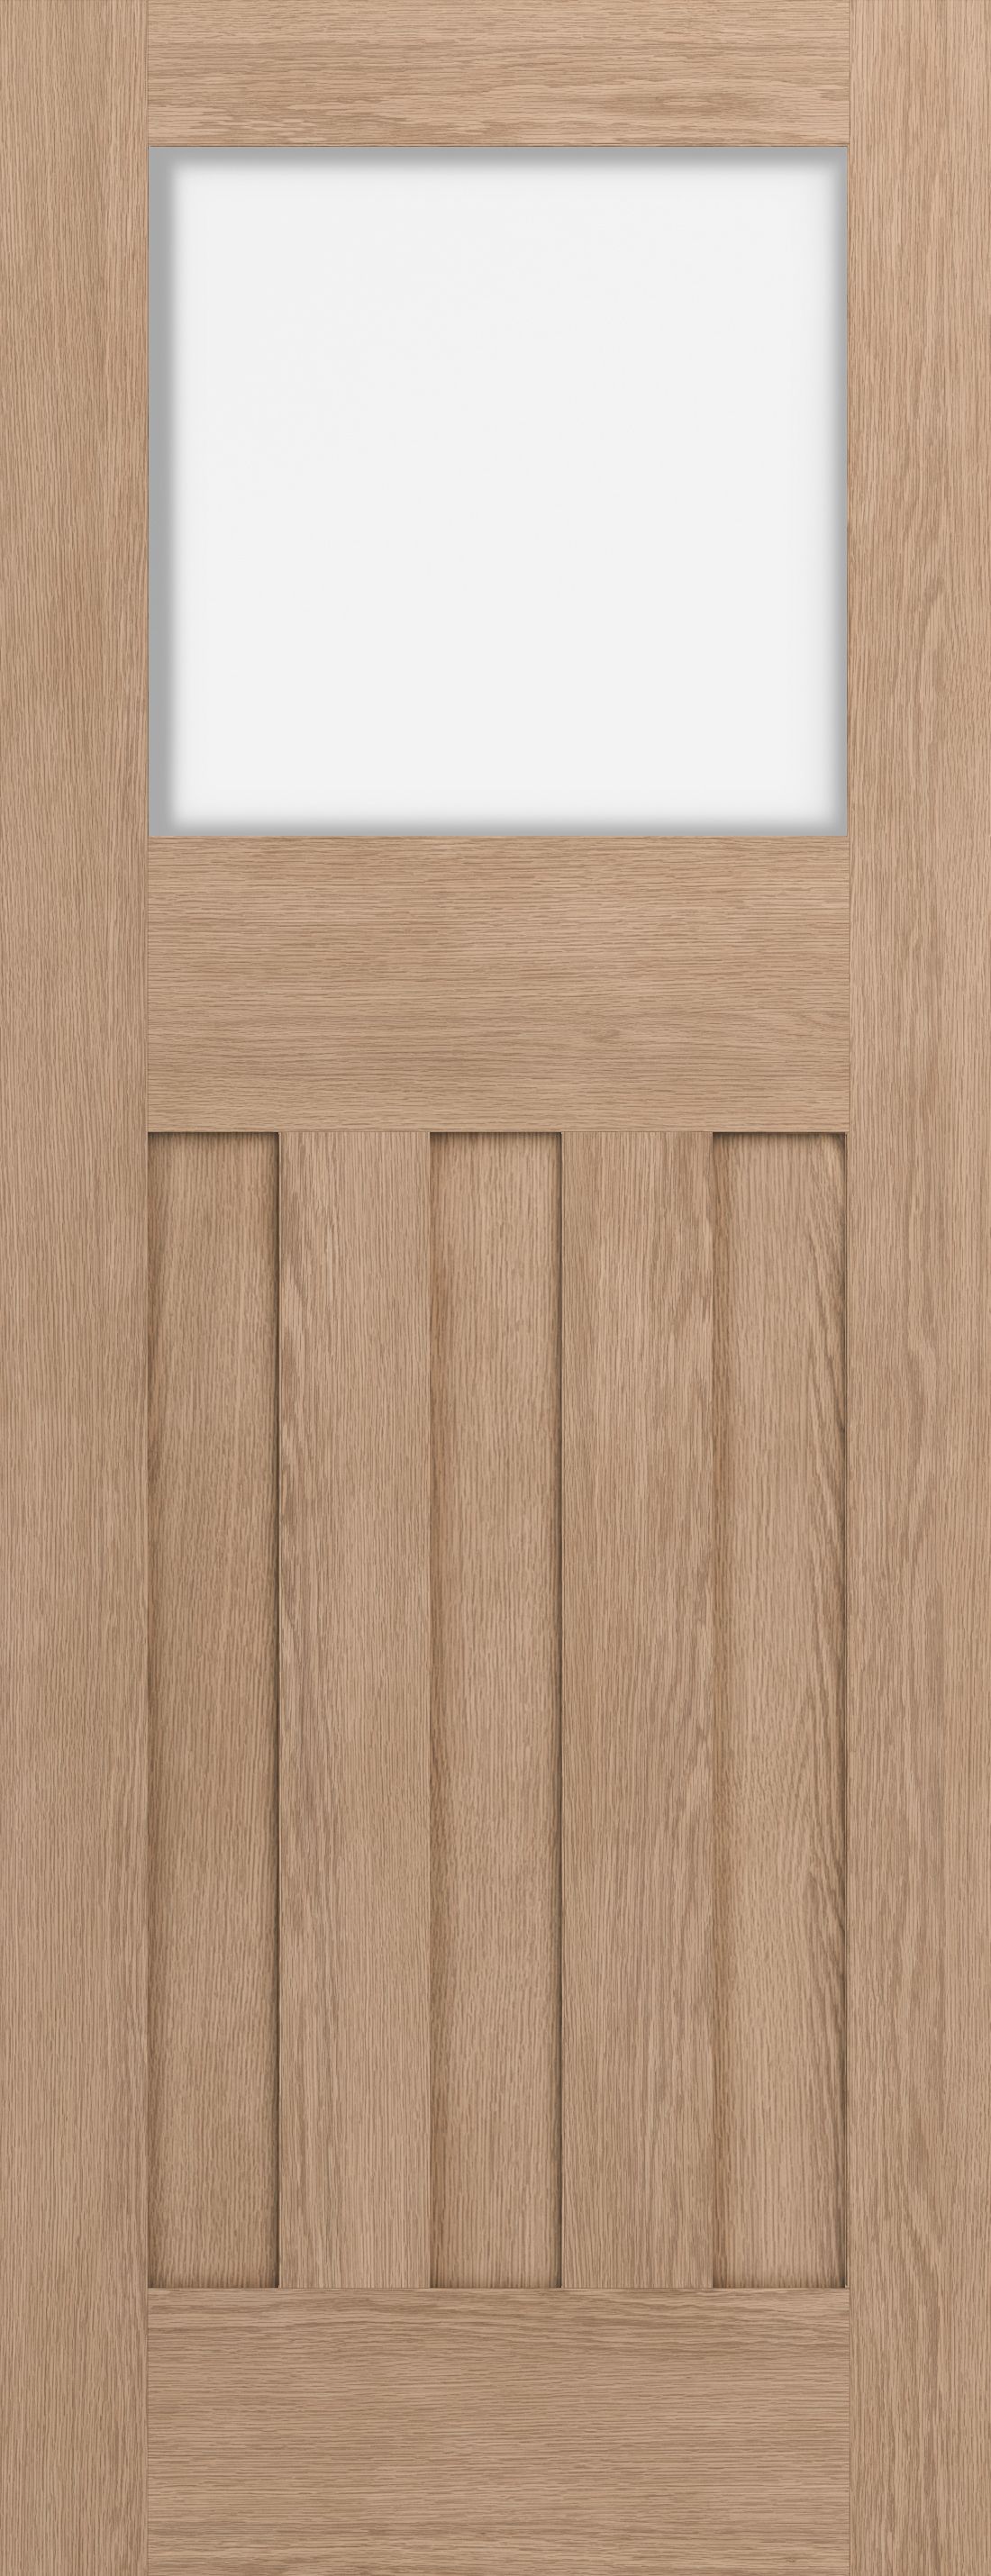 Geom Traditional Clear Glazed Oak veneer Internal Door, (H)1981mm (W)686mm (T)35mm